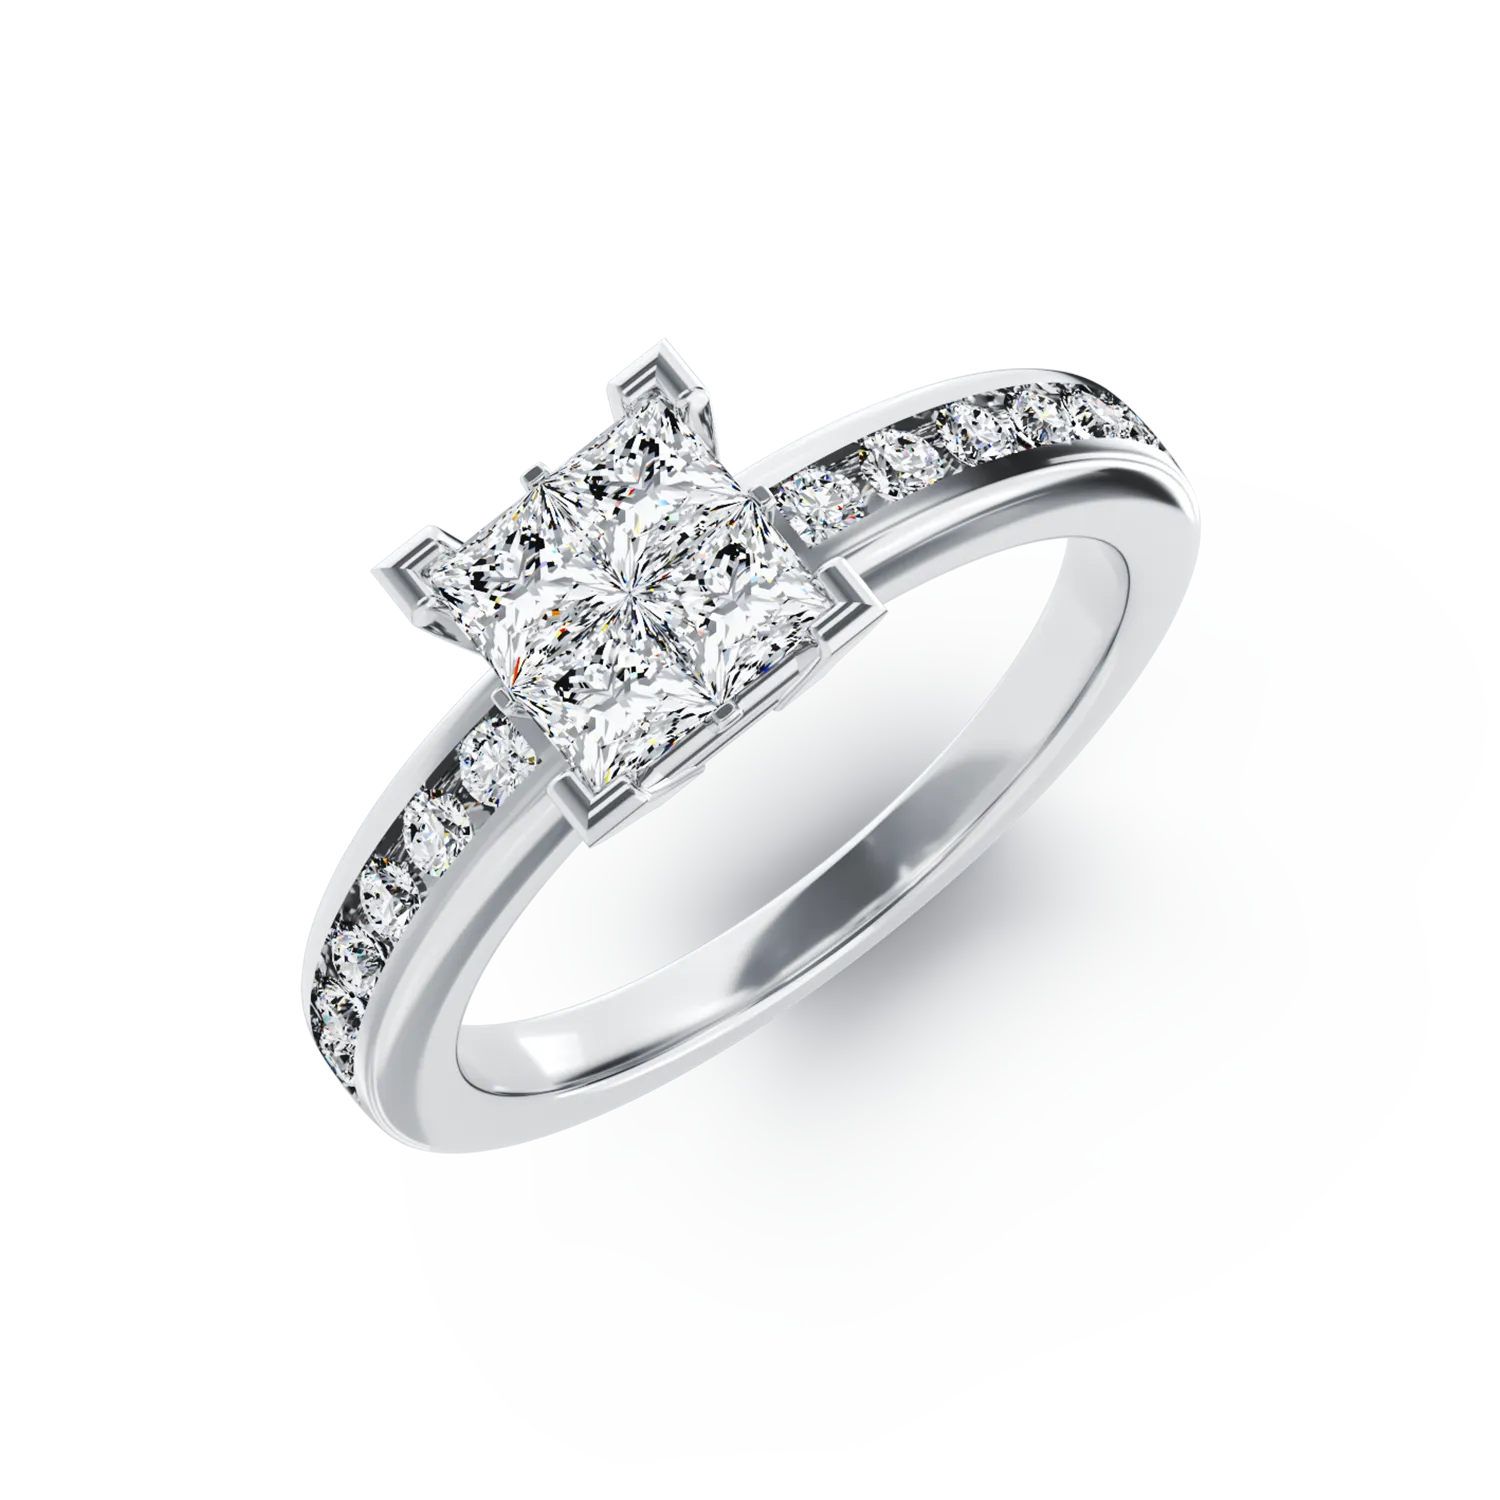 Eljegyzési gyűrű 18K-os fehér aranyból 0,5ct gyémánttal és 0,24ct gyémántokkal. Gramm: 3,46